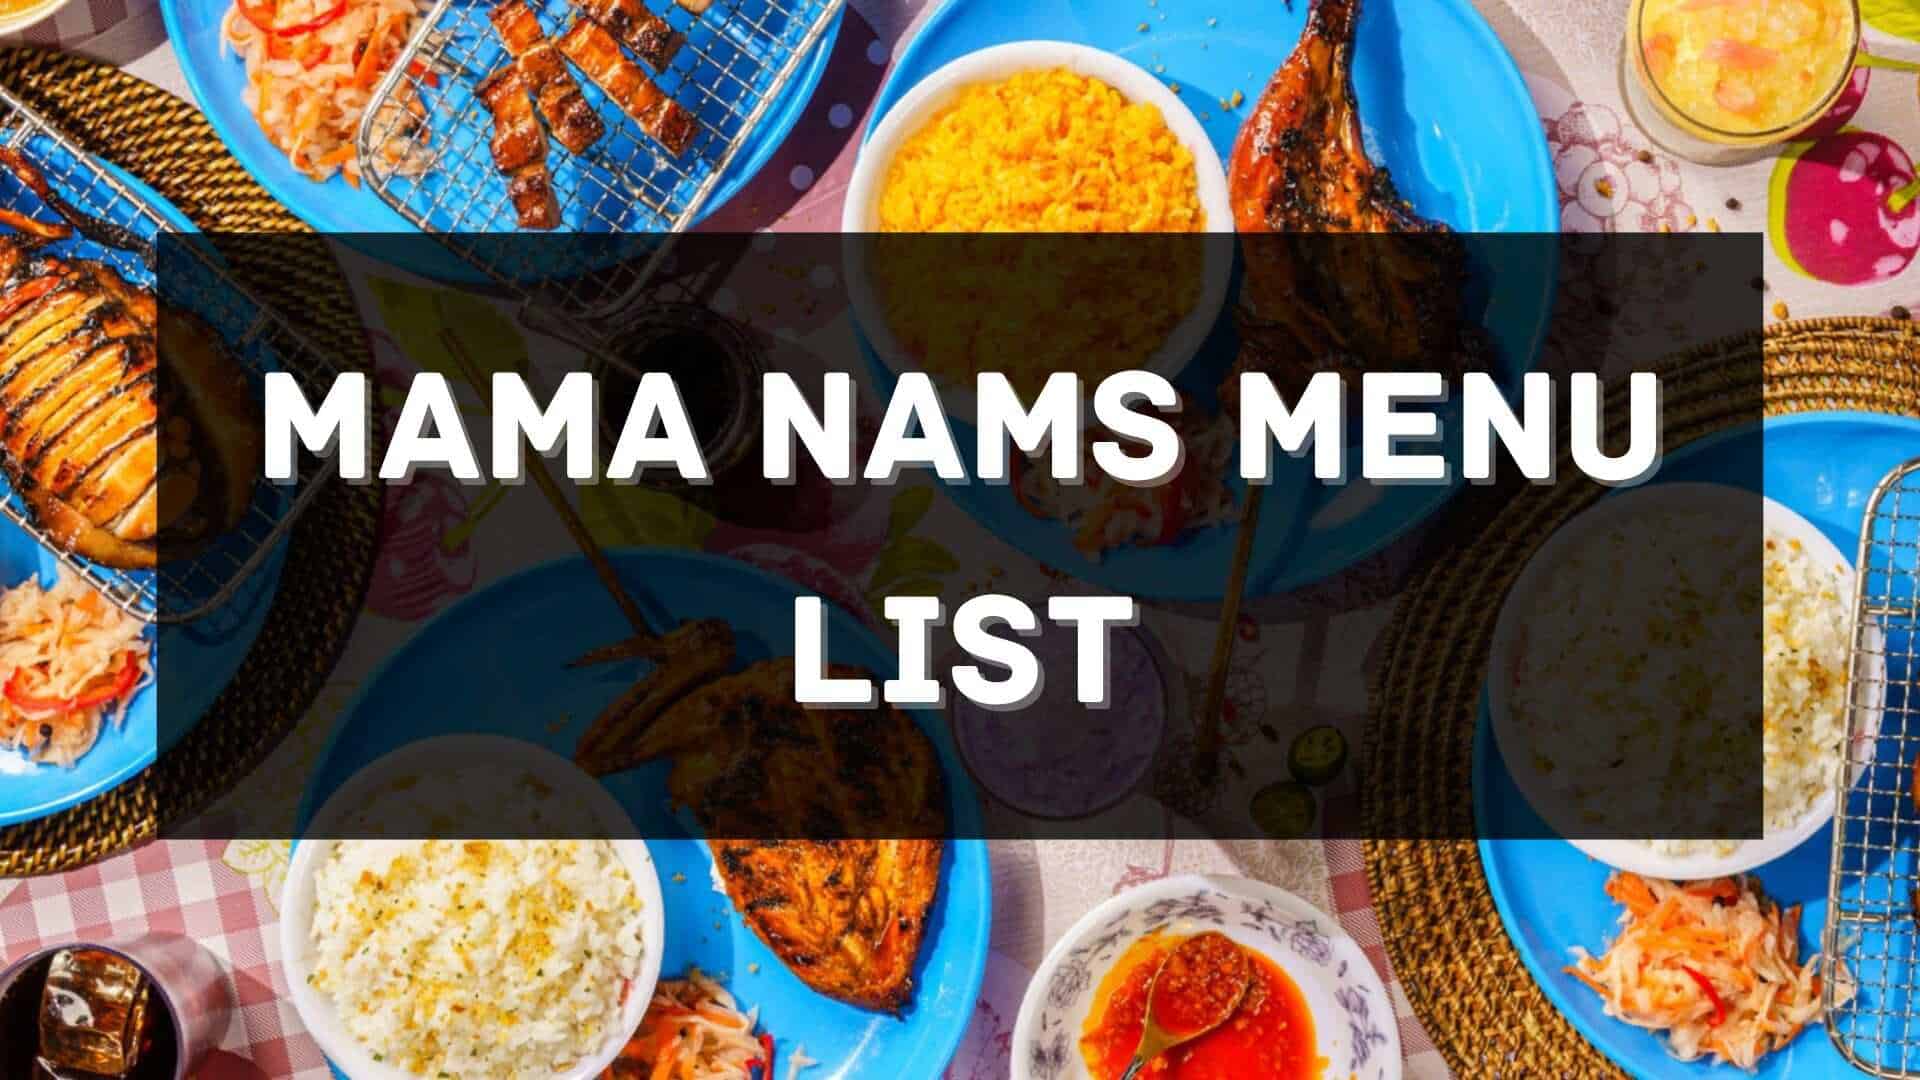 mama nams menu prices philippines